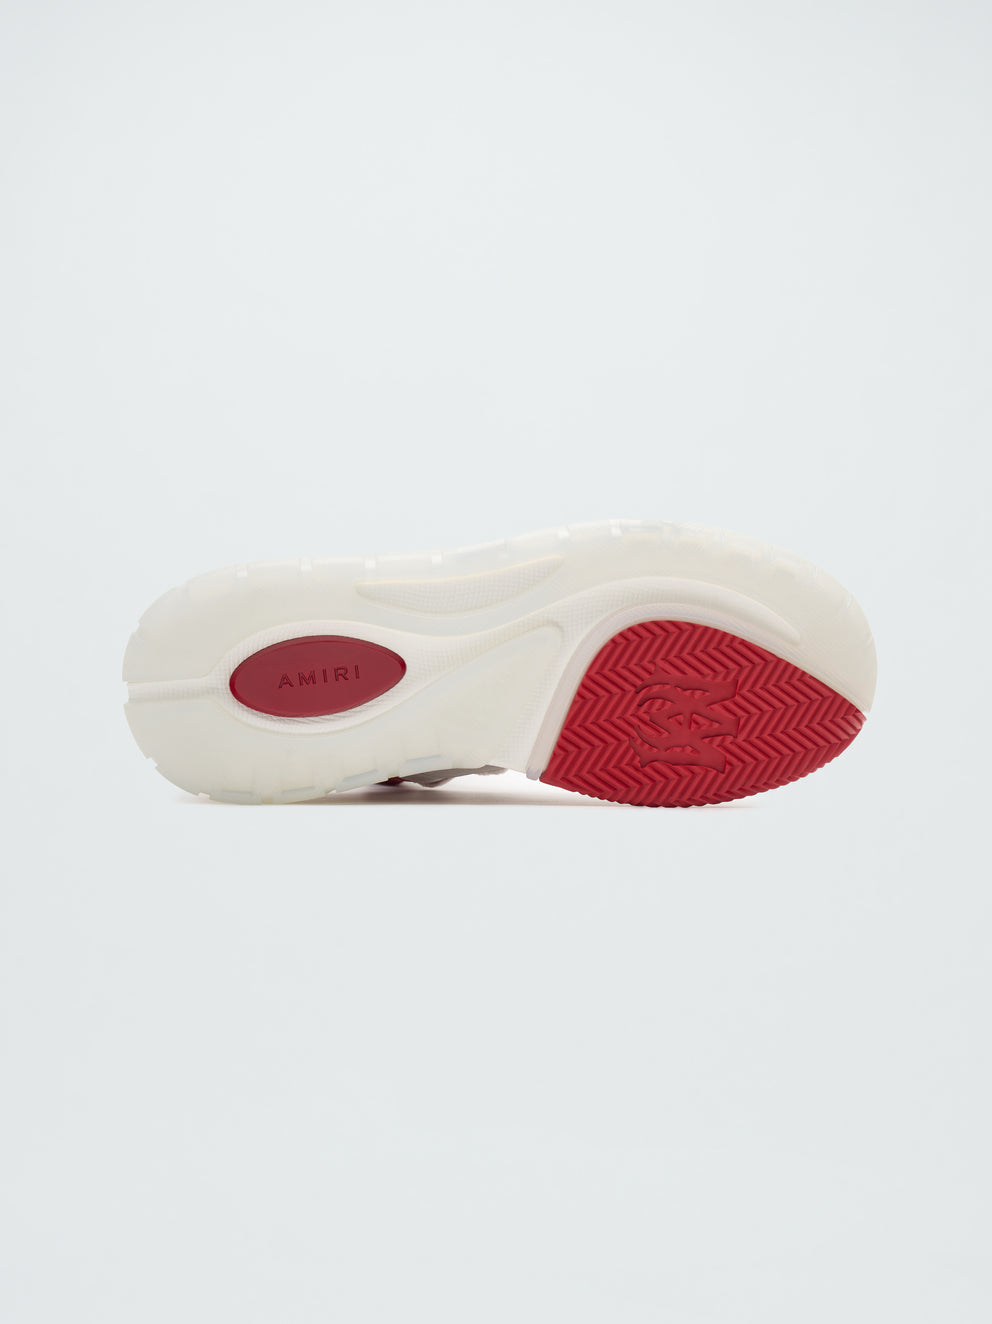 Zapatillas Amiri Ma-1 Mujer Blancas Rojas | 2314YPQOG